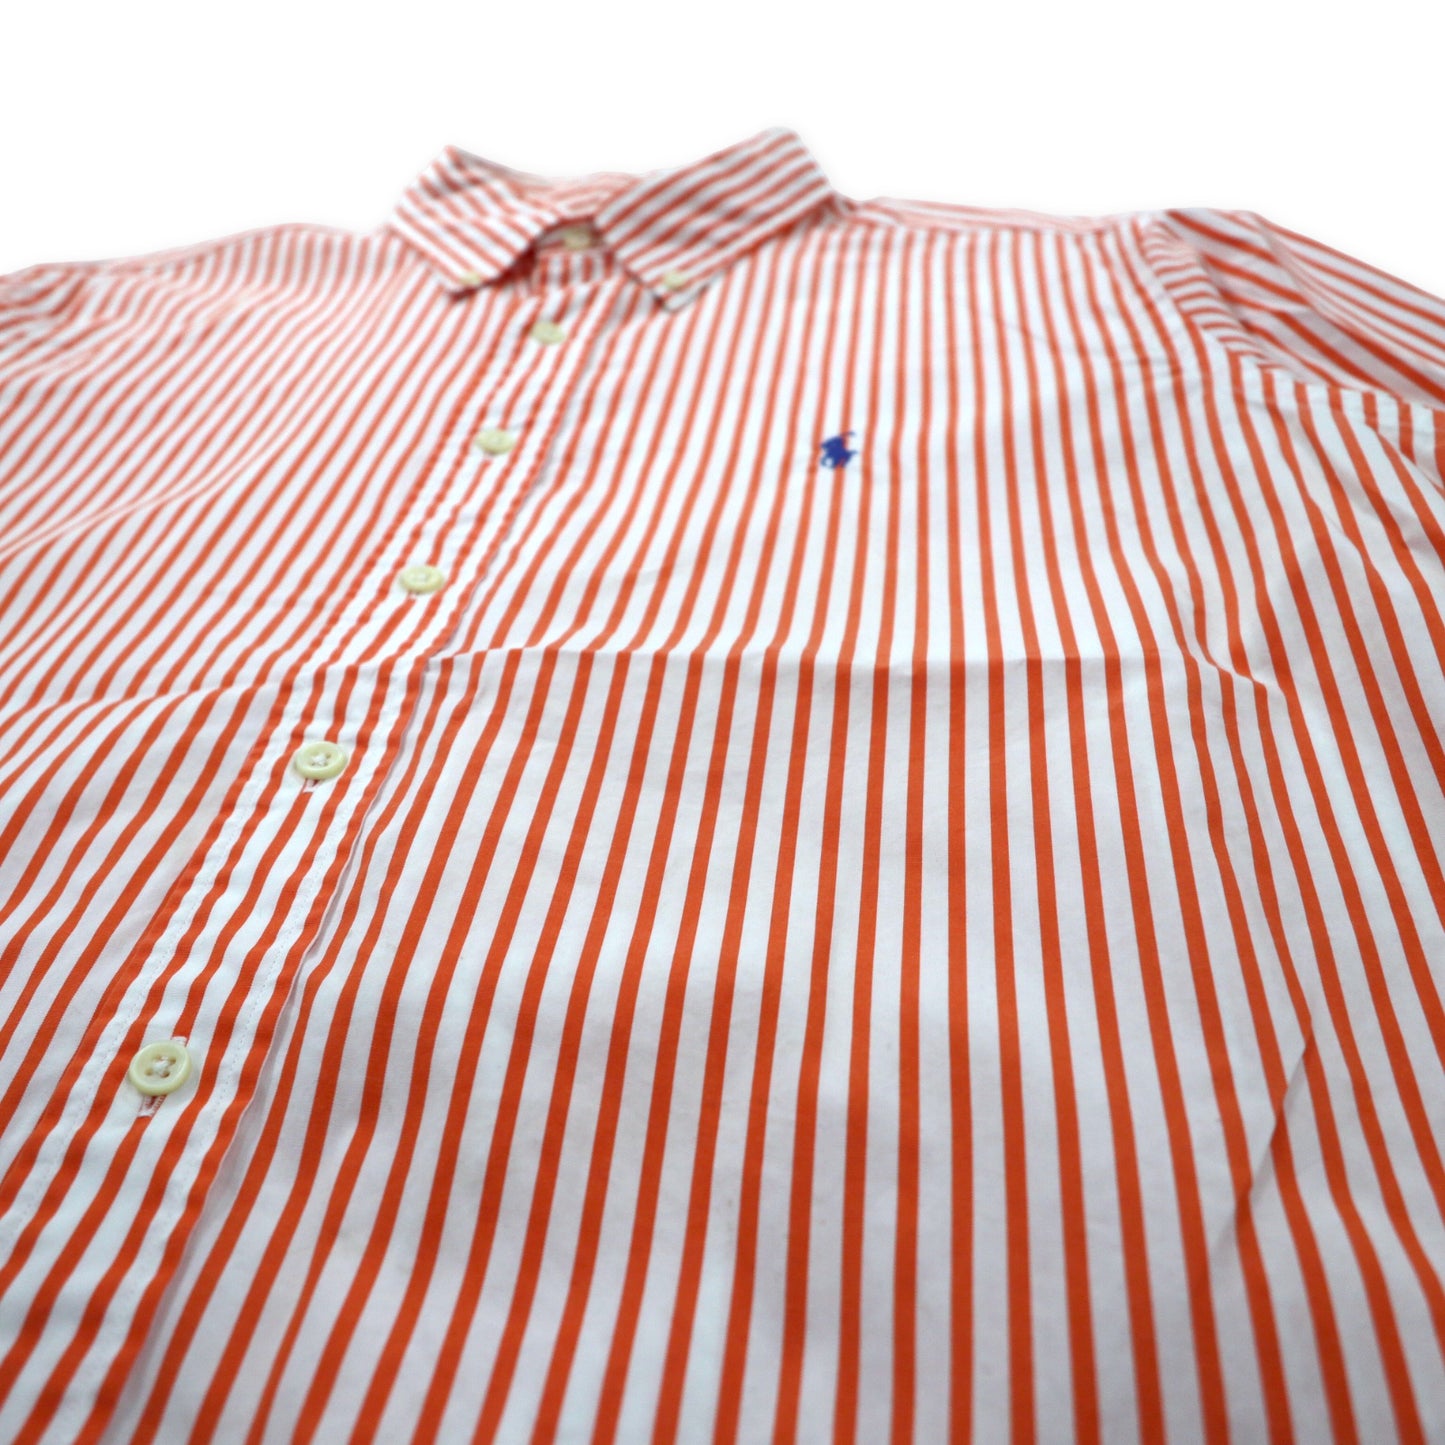 Ralph Lauren ボタンダウンシャツ XL オレンジ ホワイト ストライプ コットン スモールポニー刺繍